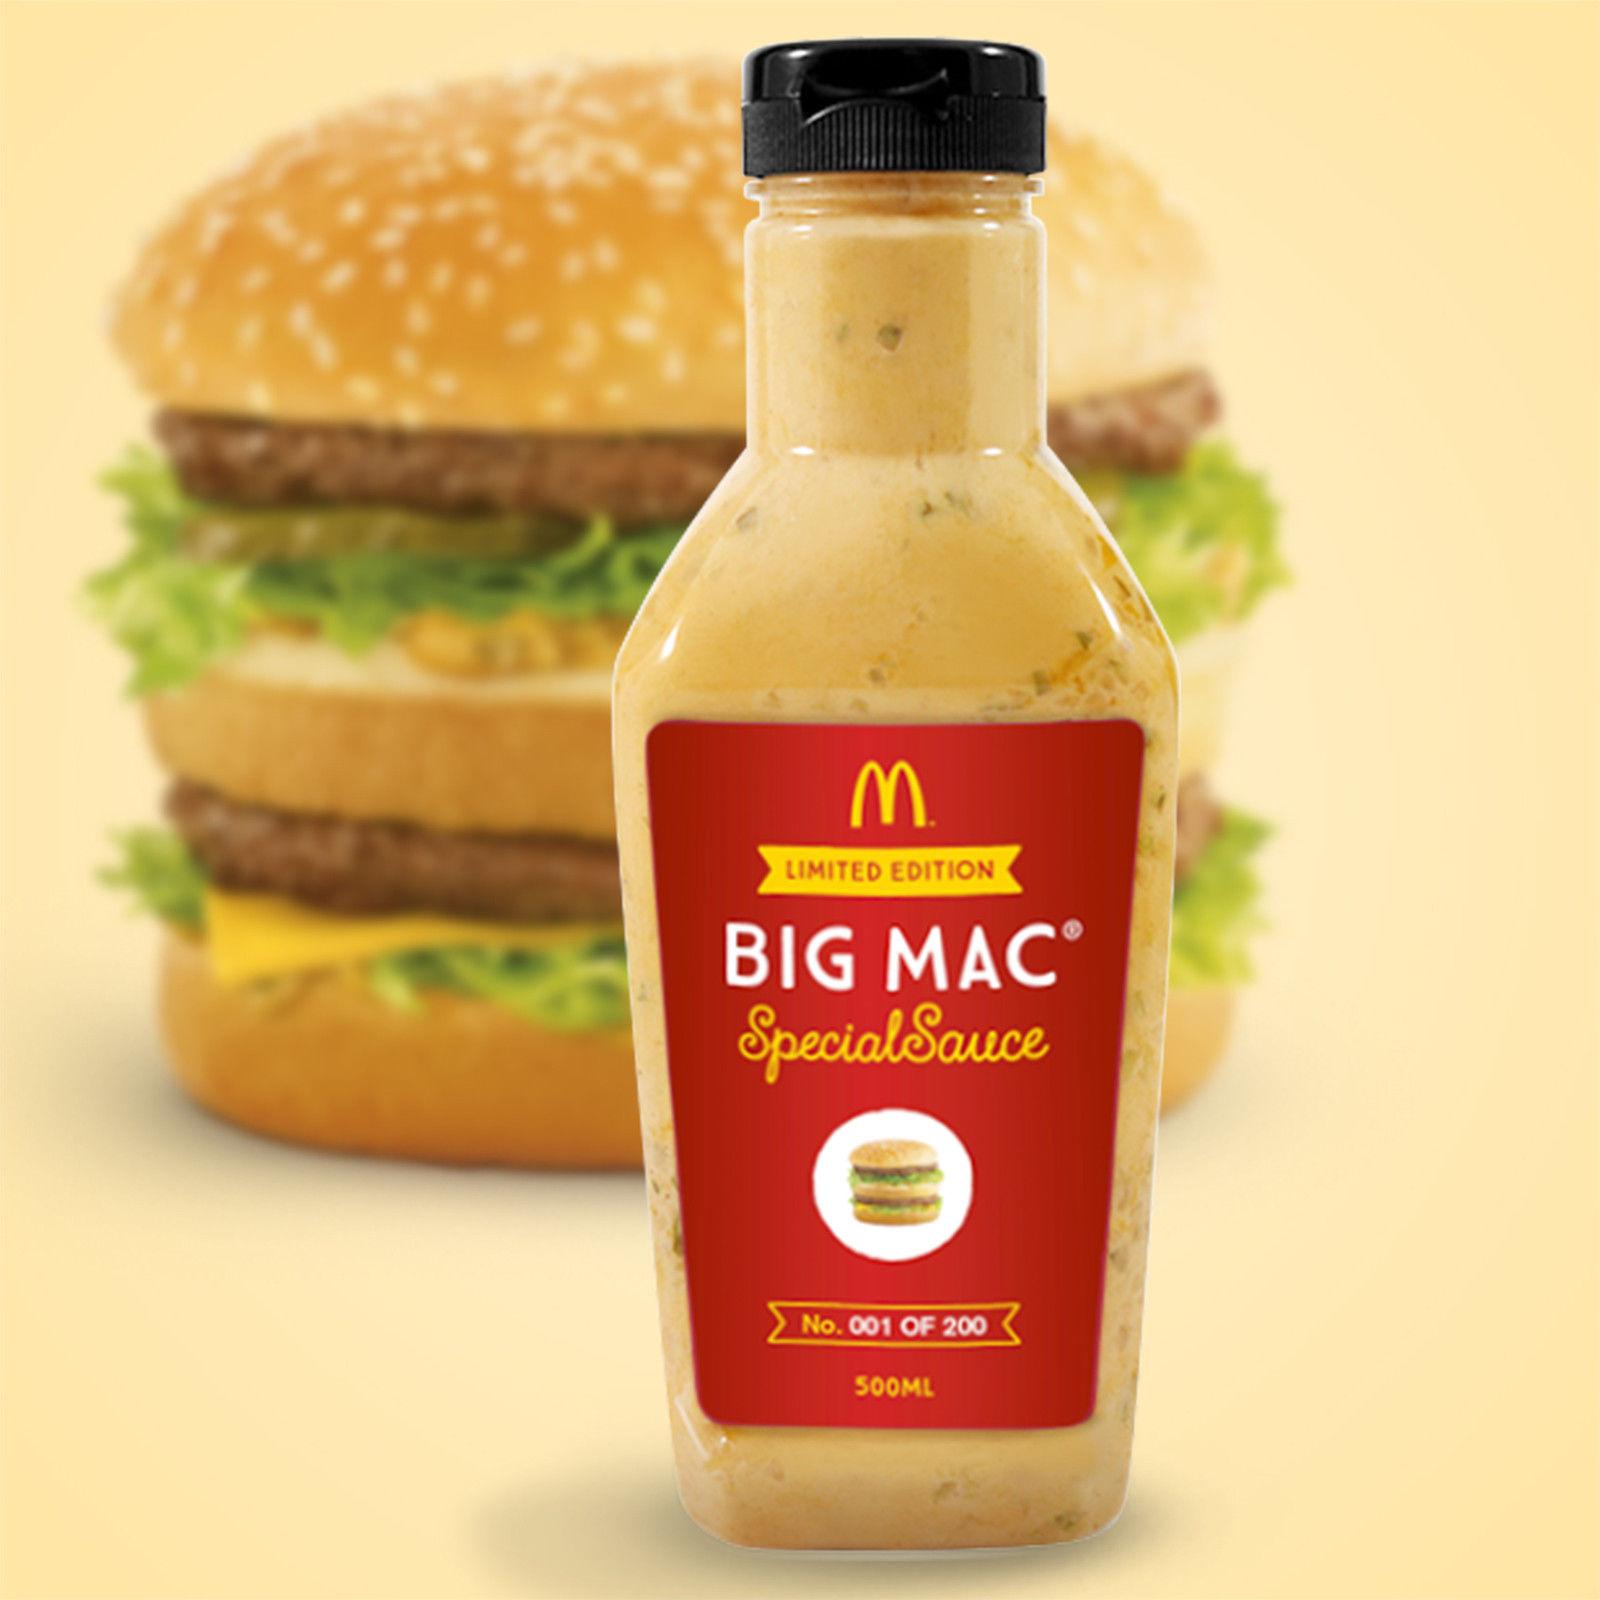 Acheter la sauce Big Mac, c'est désormais possible